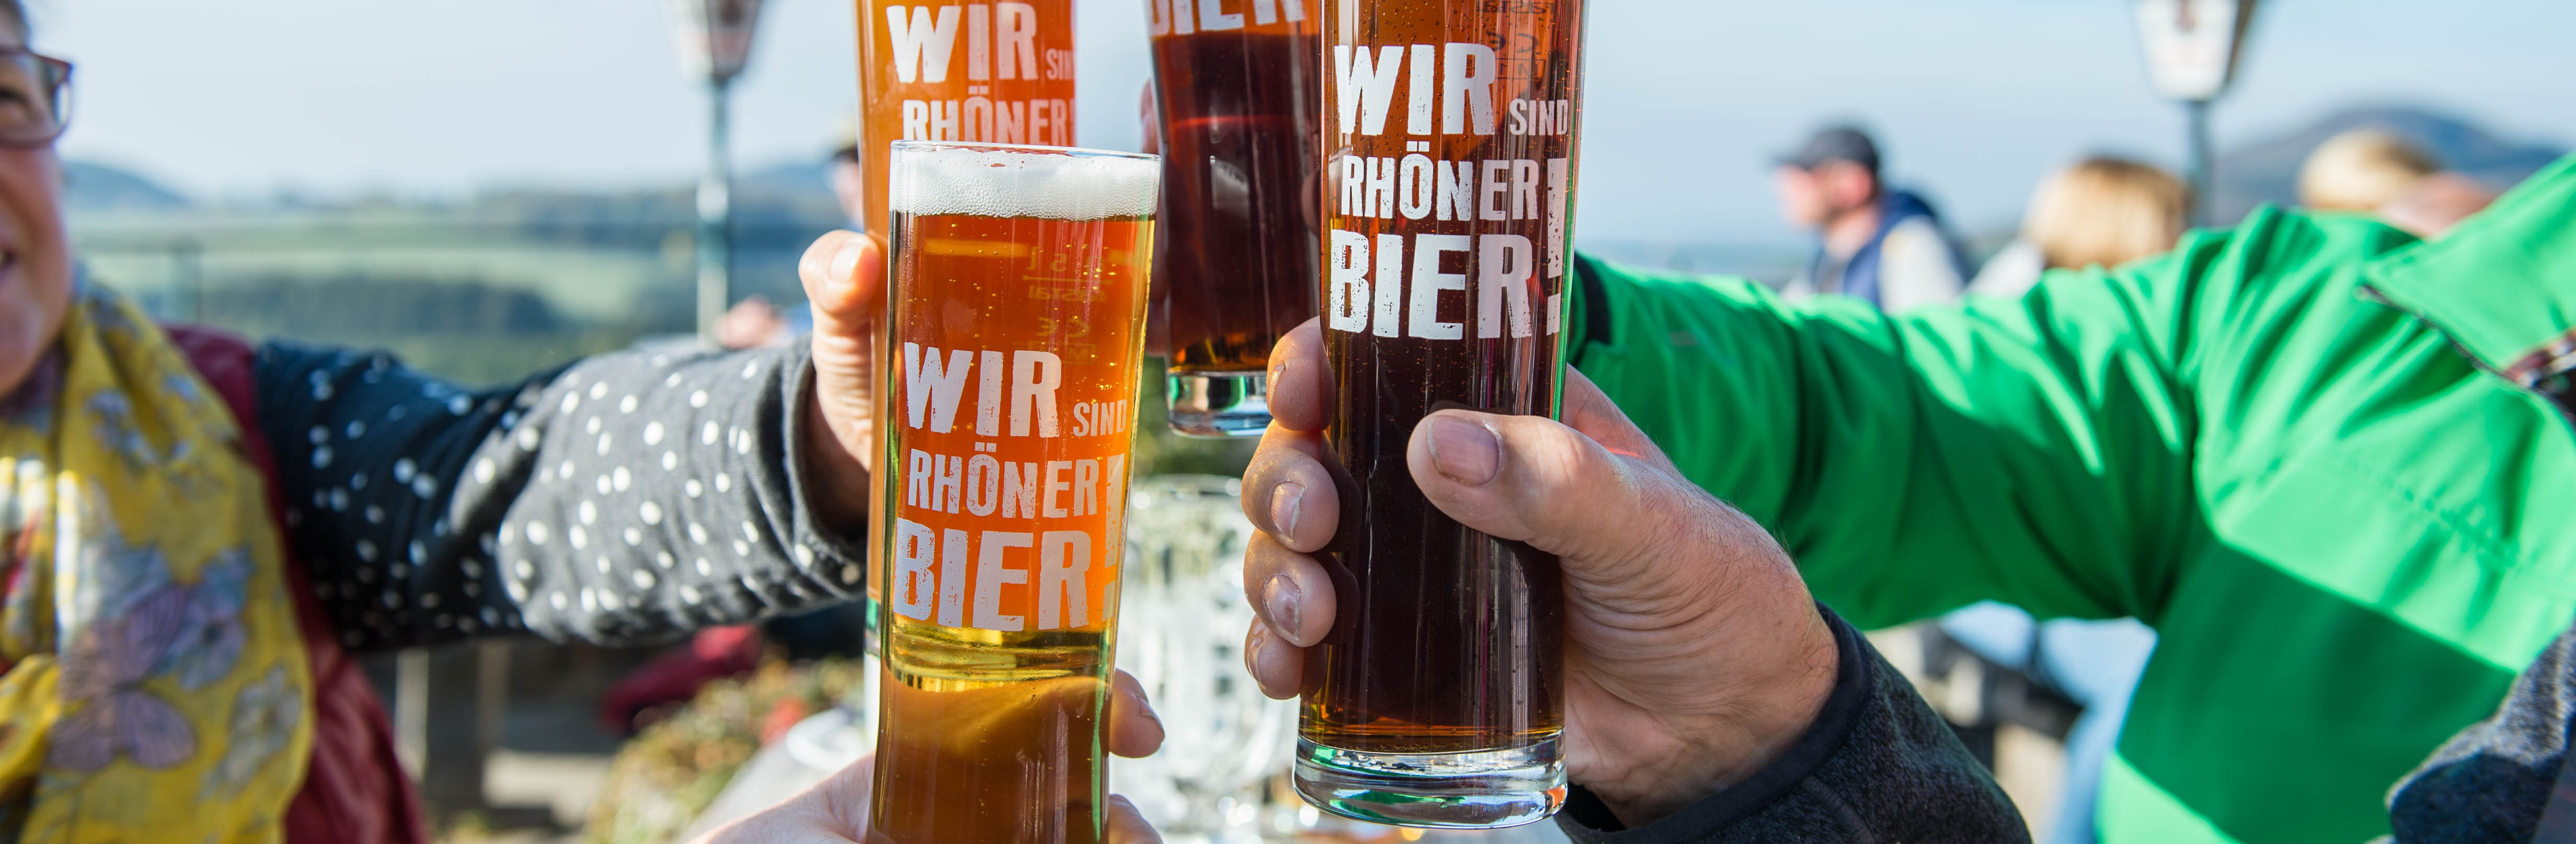 Biergläser mit der Aufschrift "Wir sind Rhöner Bier!"